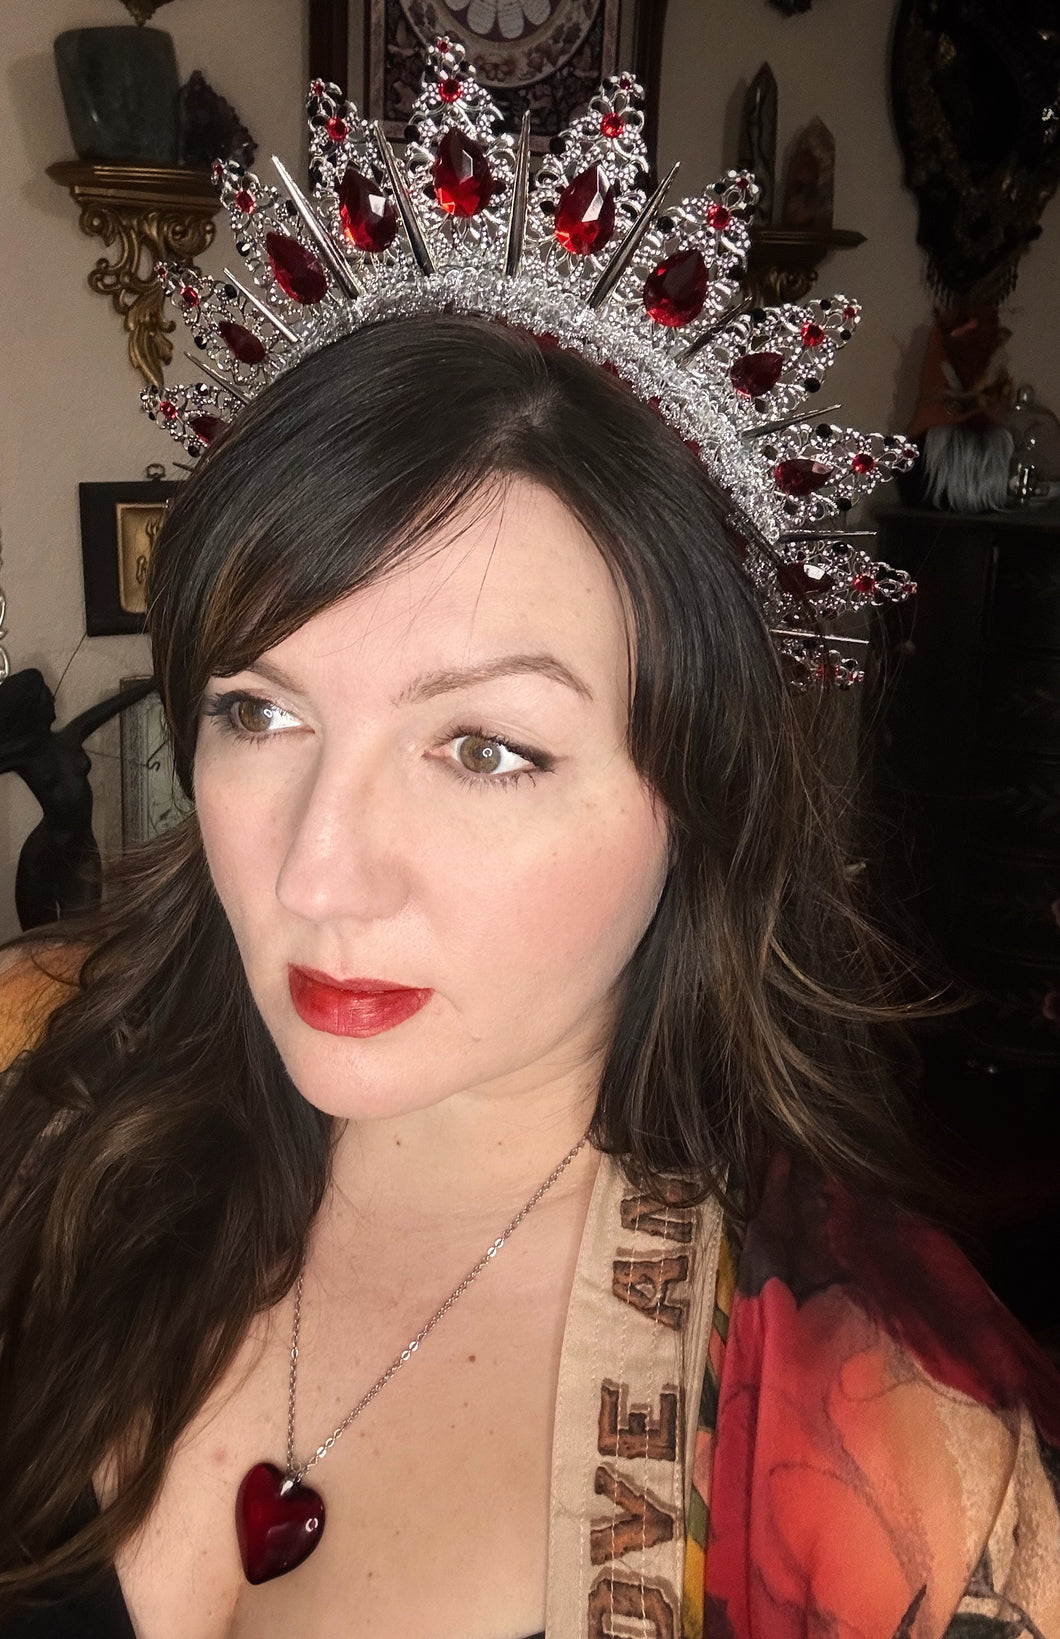 The Vampire Queen Crown